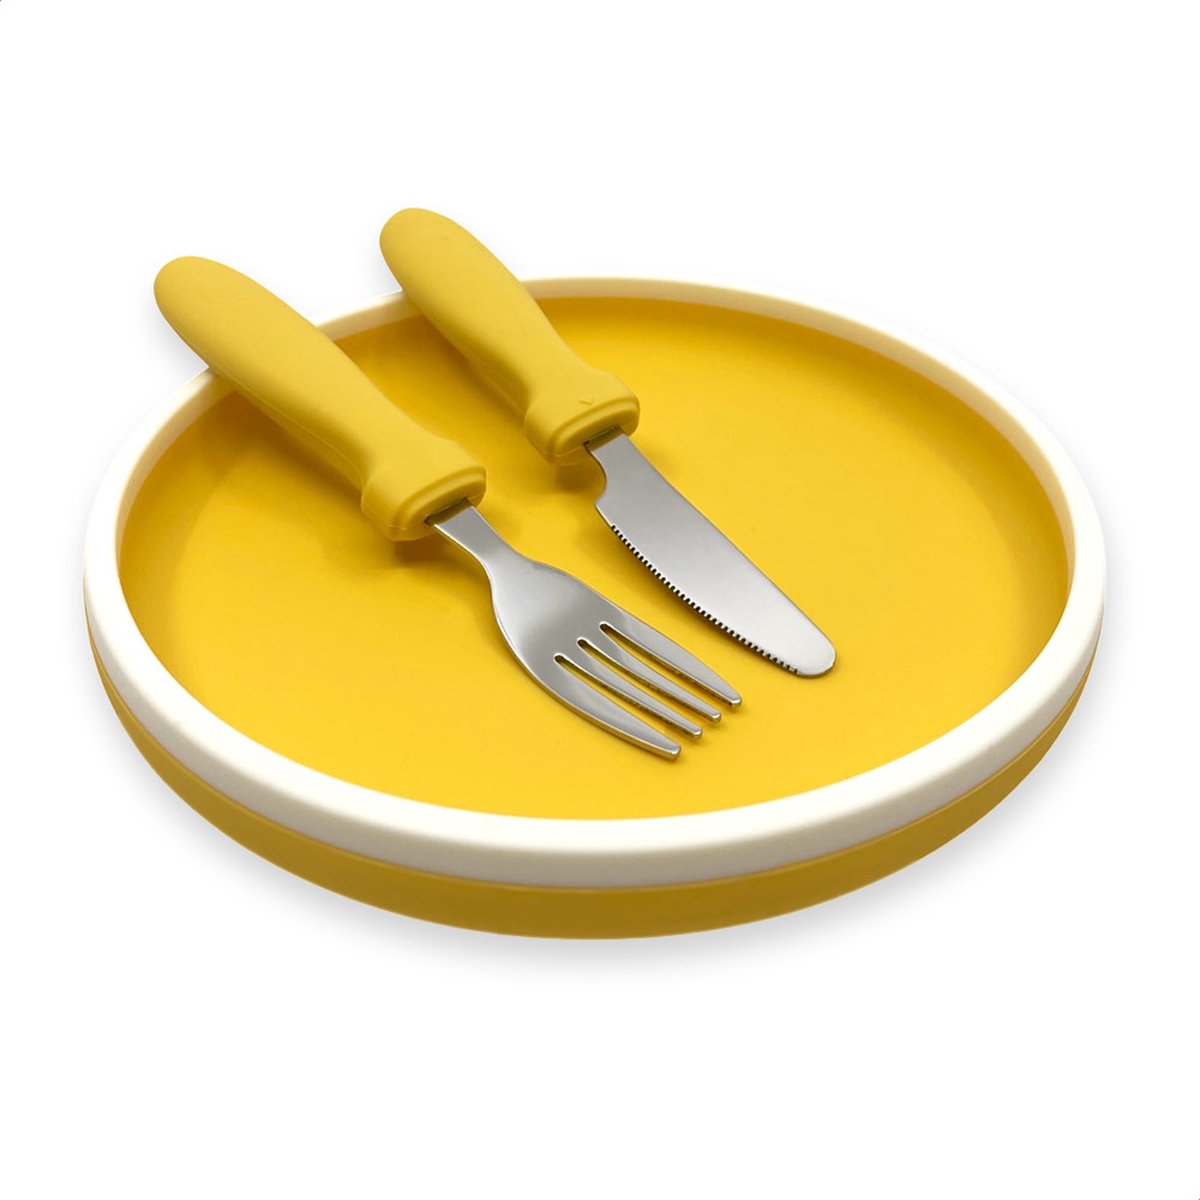 Smikkels - Siliconen bordje met mes en vork - Veilig Kinderservies - kinderbordje - kinderbestek - Duurzaam - Kleuter - Peuter - Geel